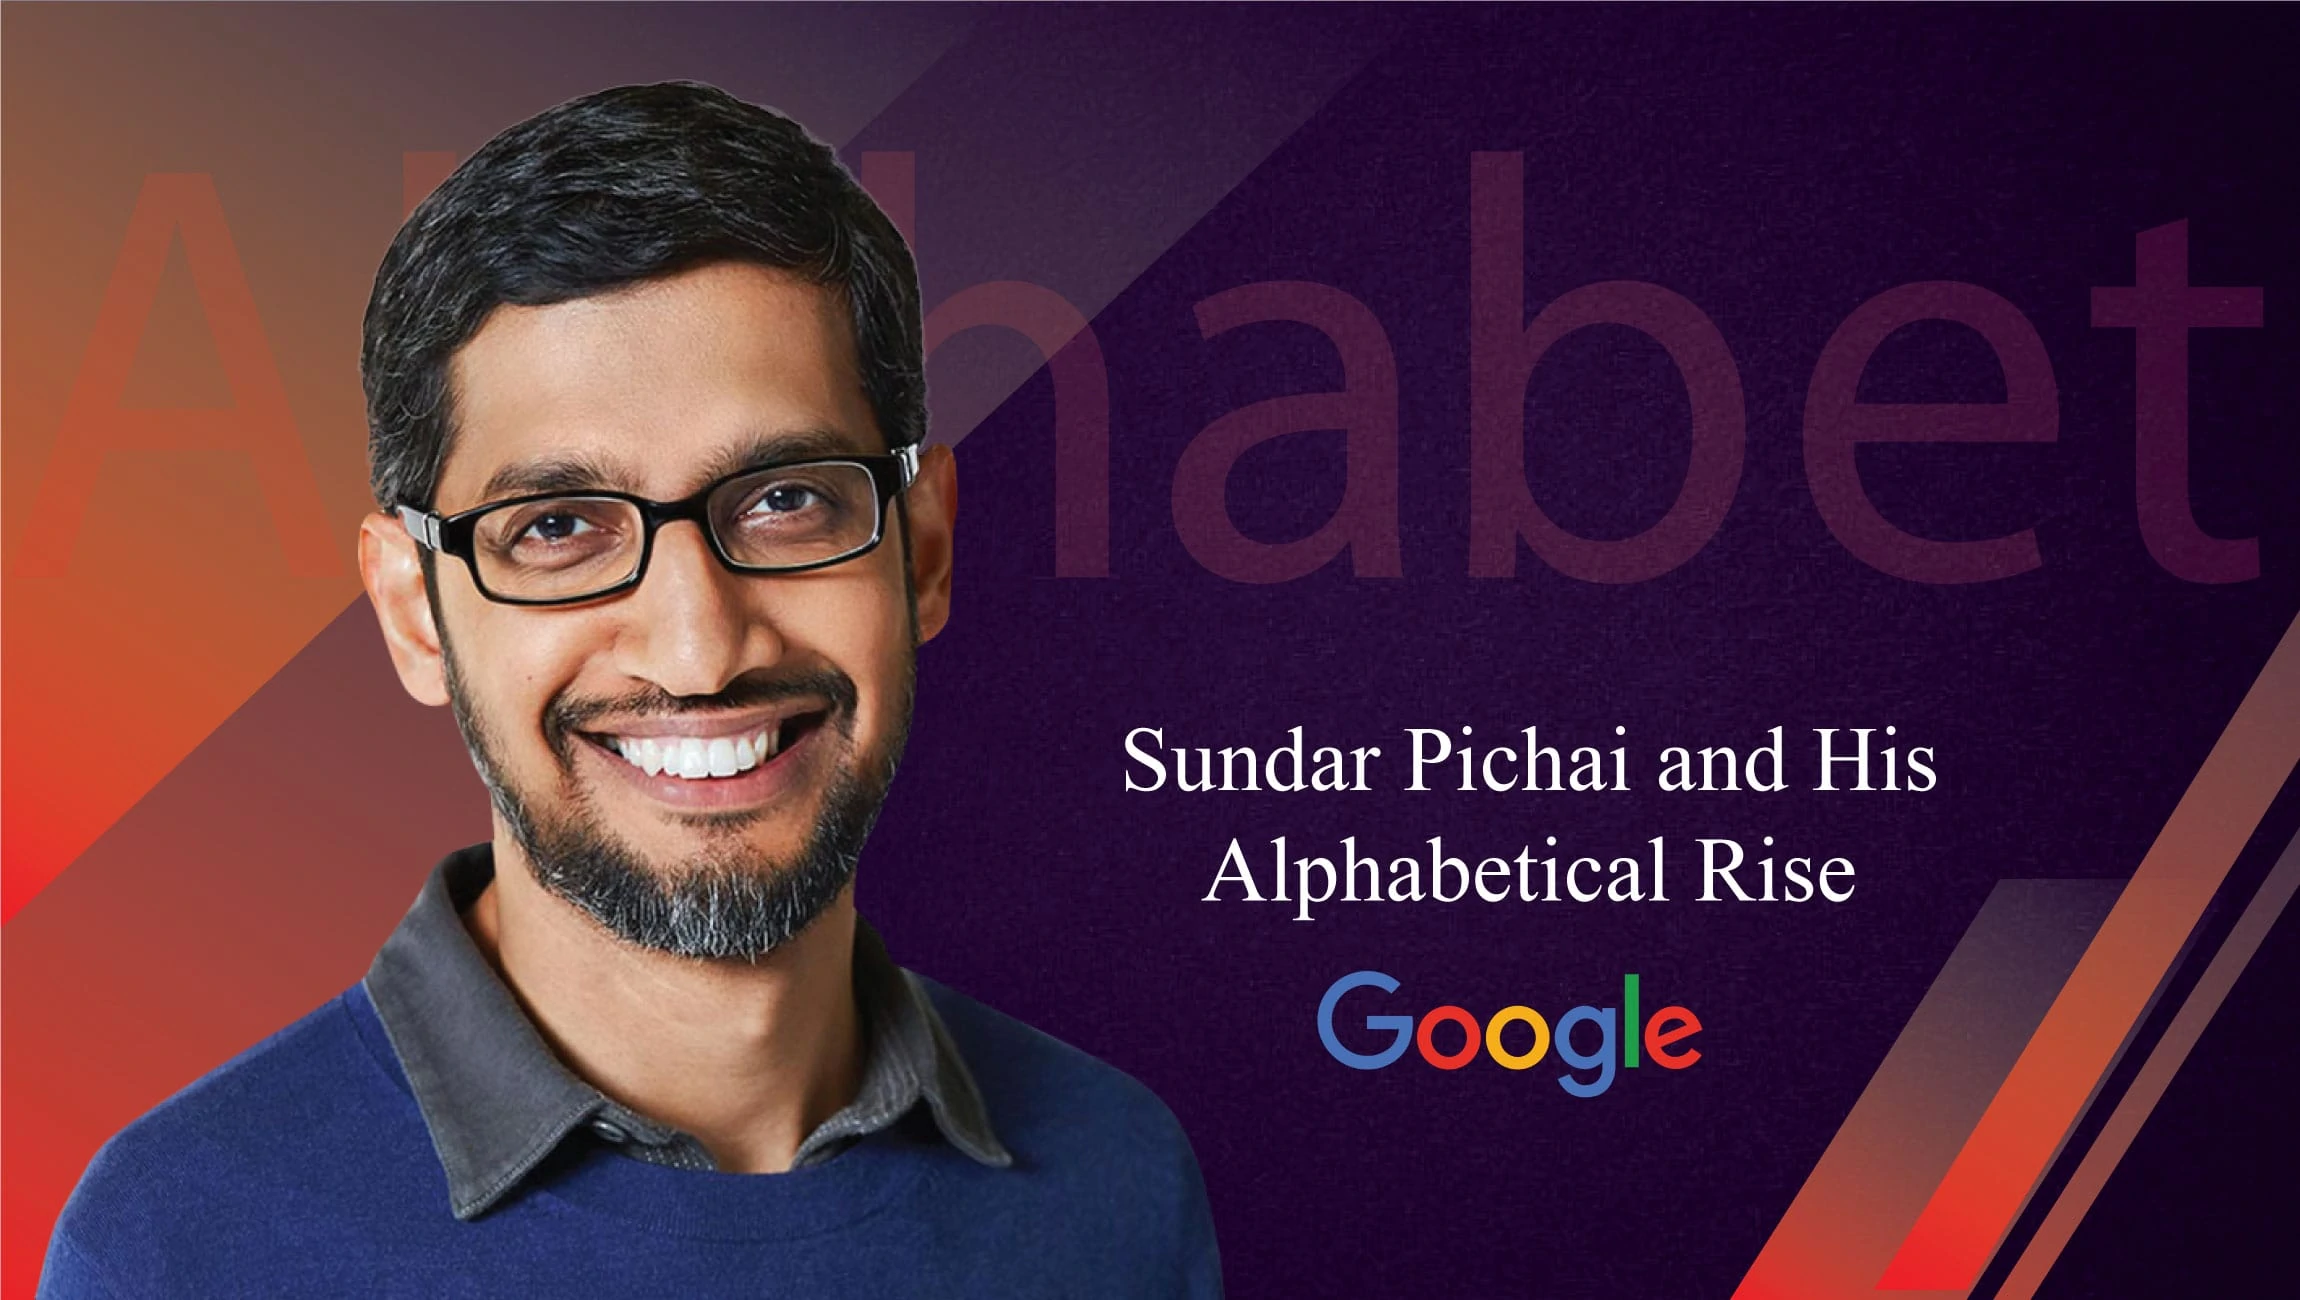 Chi è Sundar Pichai e quanto guadagna il CEO di Alphabet